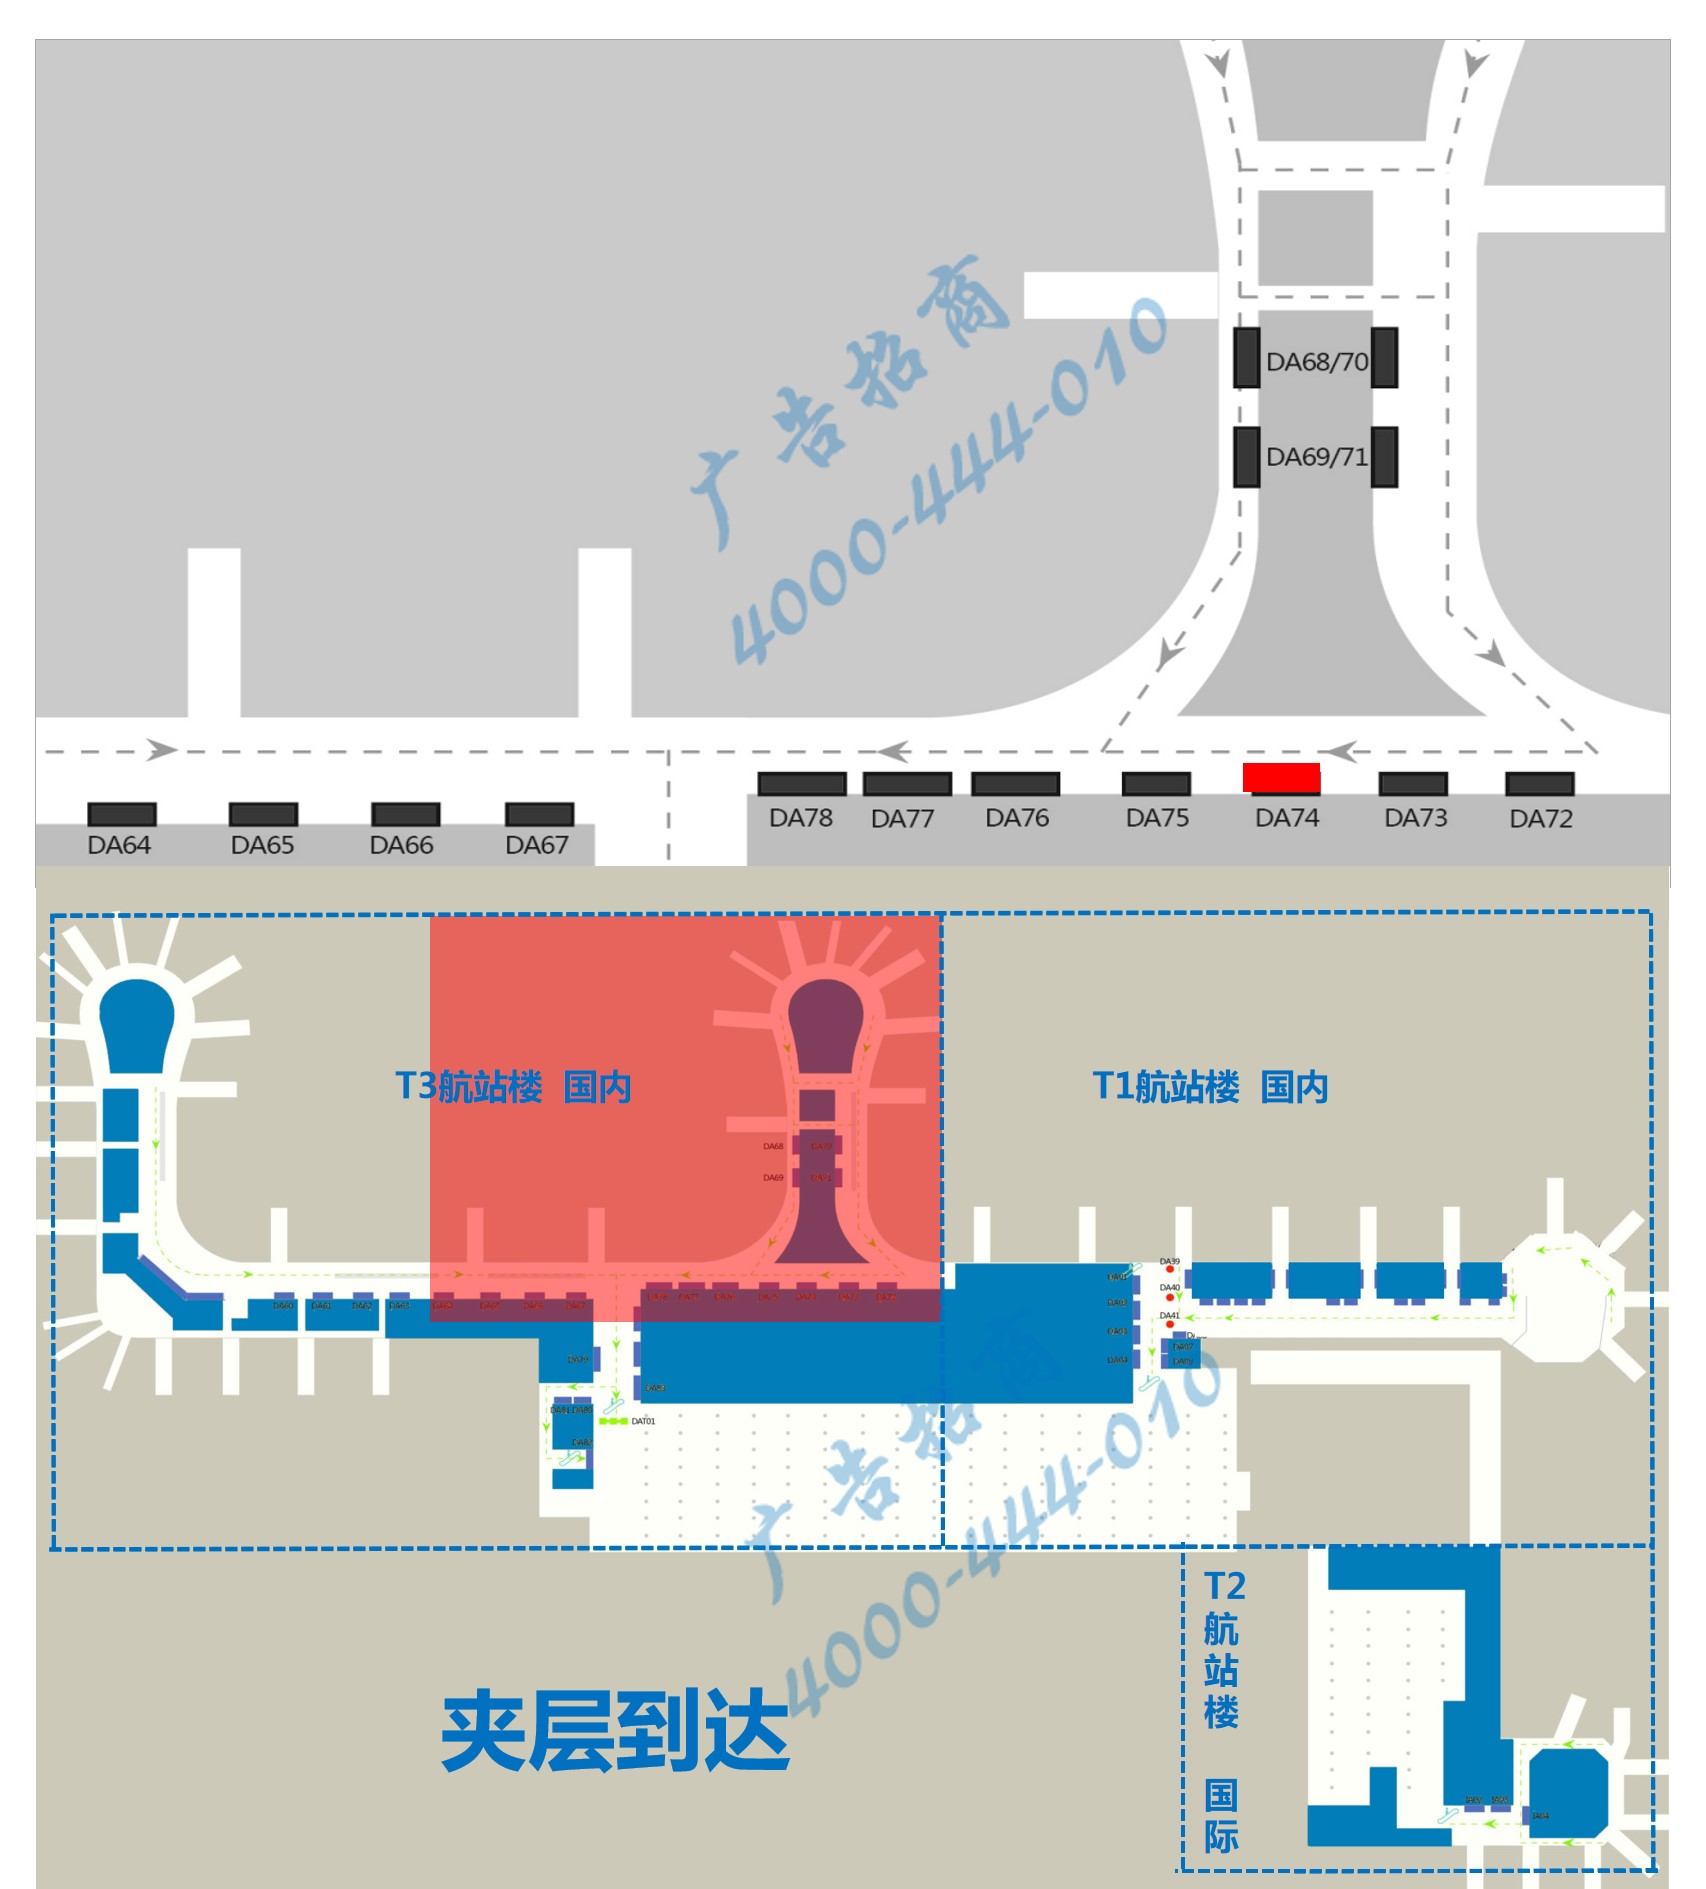 杭州萧山机场广告-T3到达通廊灯箱DA74位置图